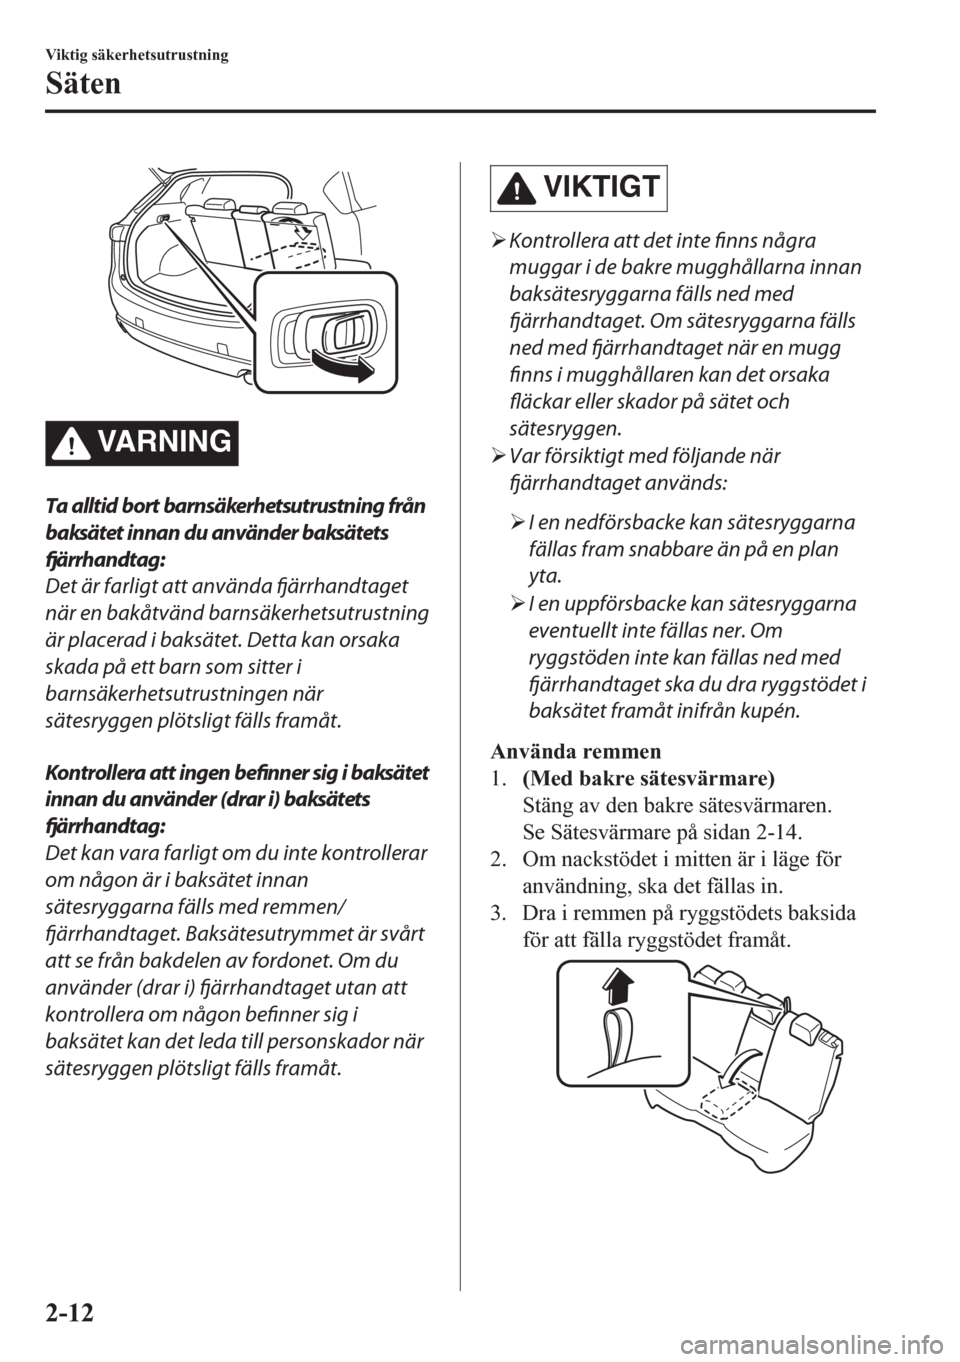 MAZDA MODEL CX-5 2018  Ägarmanual (in Swedish) VARNING
Ta alltid bort barnsäkerhetsutrustning från
baksätet innan du använder baksätets
fjärrhandtag:
Det är farligt att använda fjärrhandtaget
när en bakåtvänd barnsäkerhetsutrustning
�